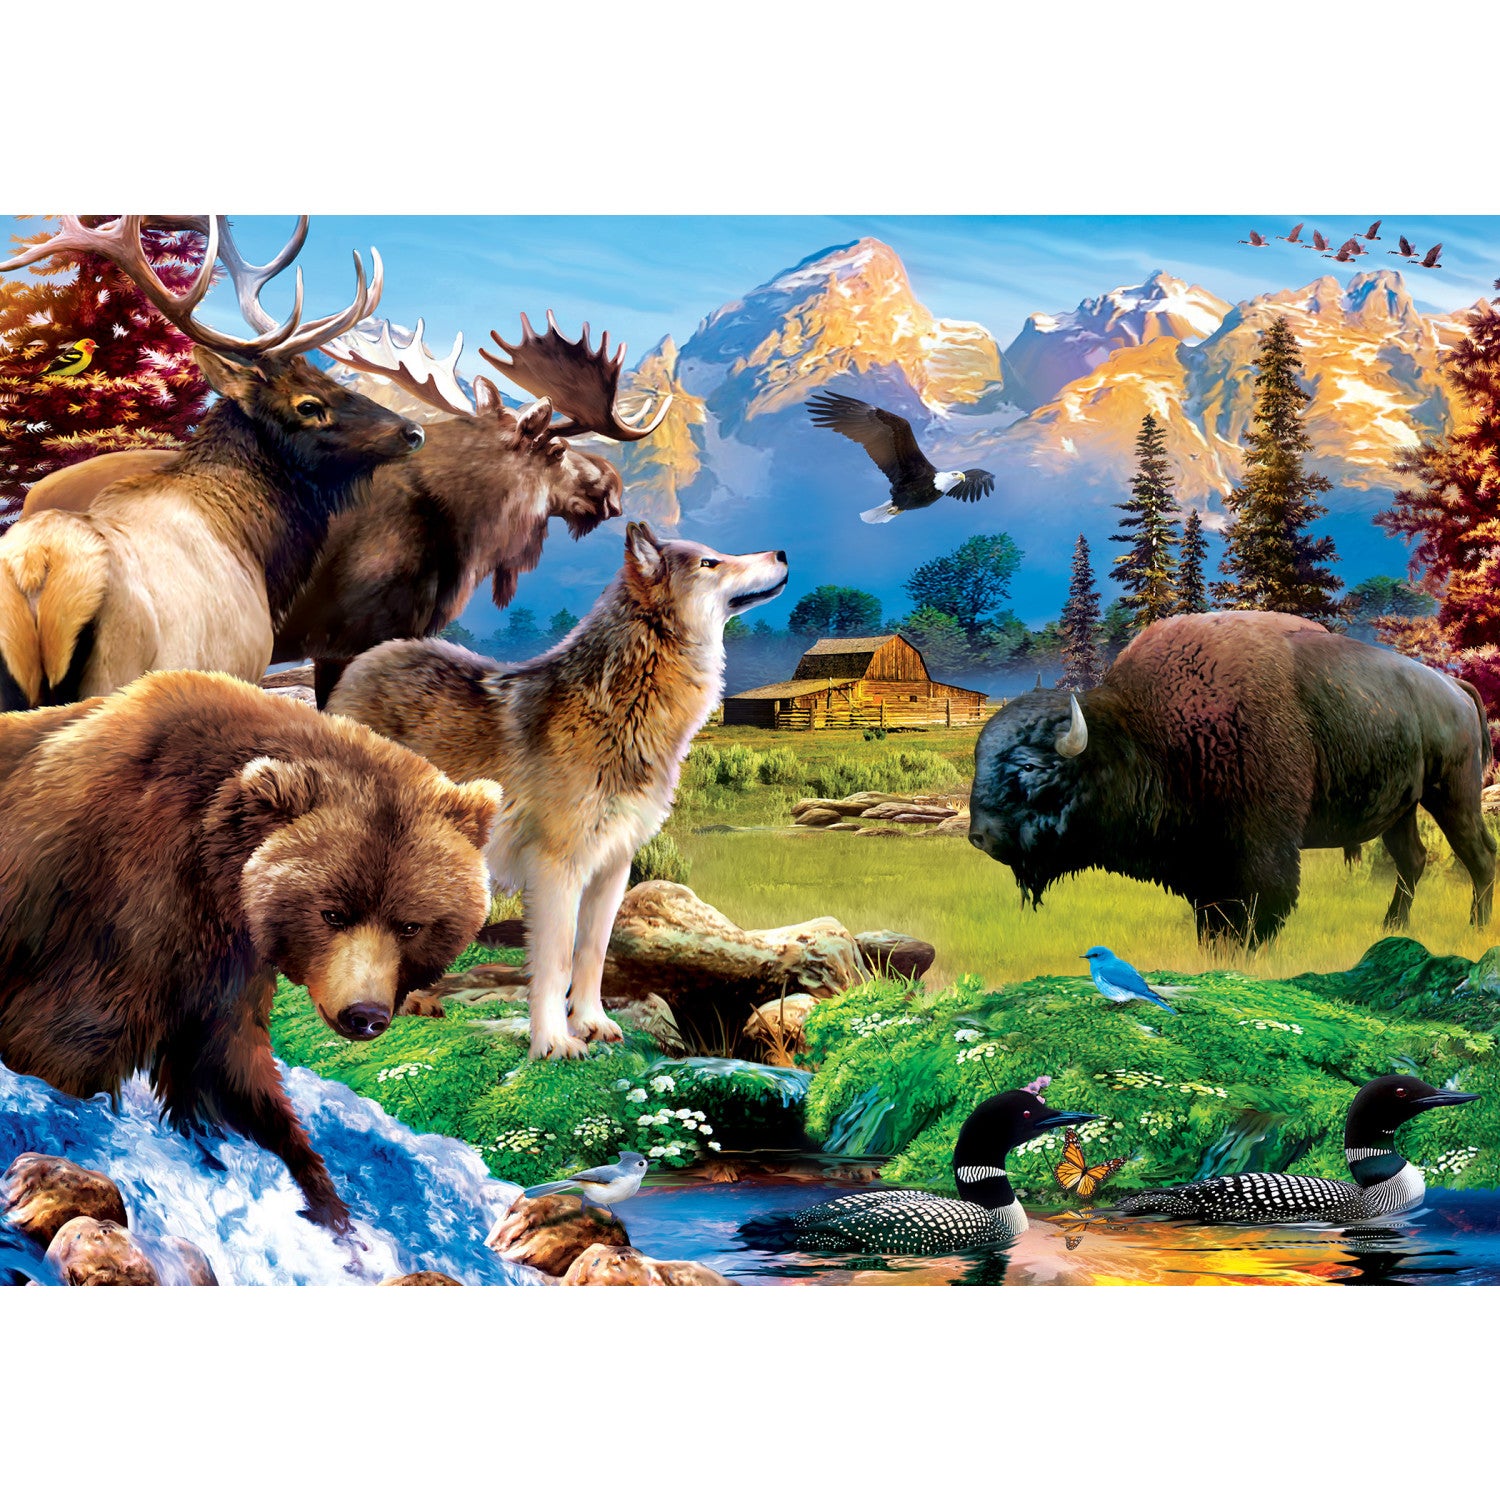 National Parks - Grand Teton 500 Piece Puzzle